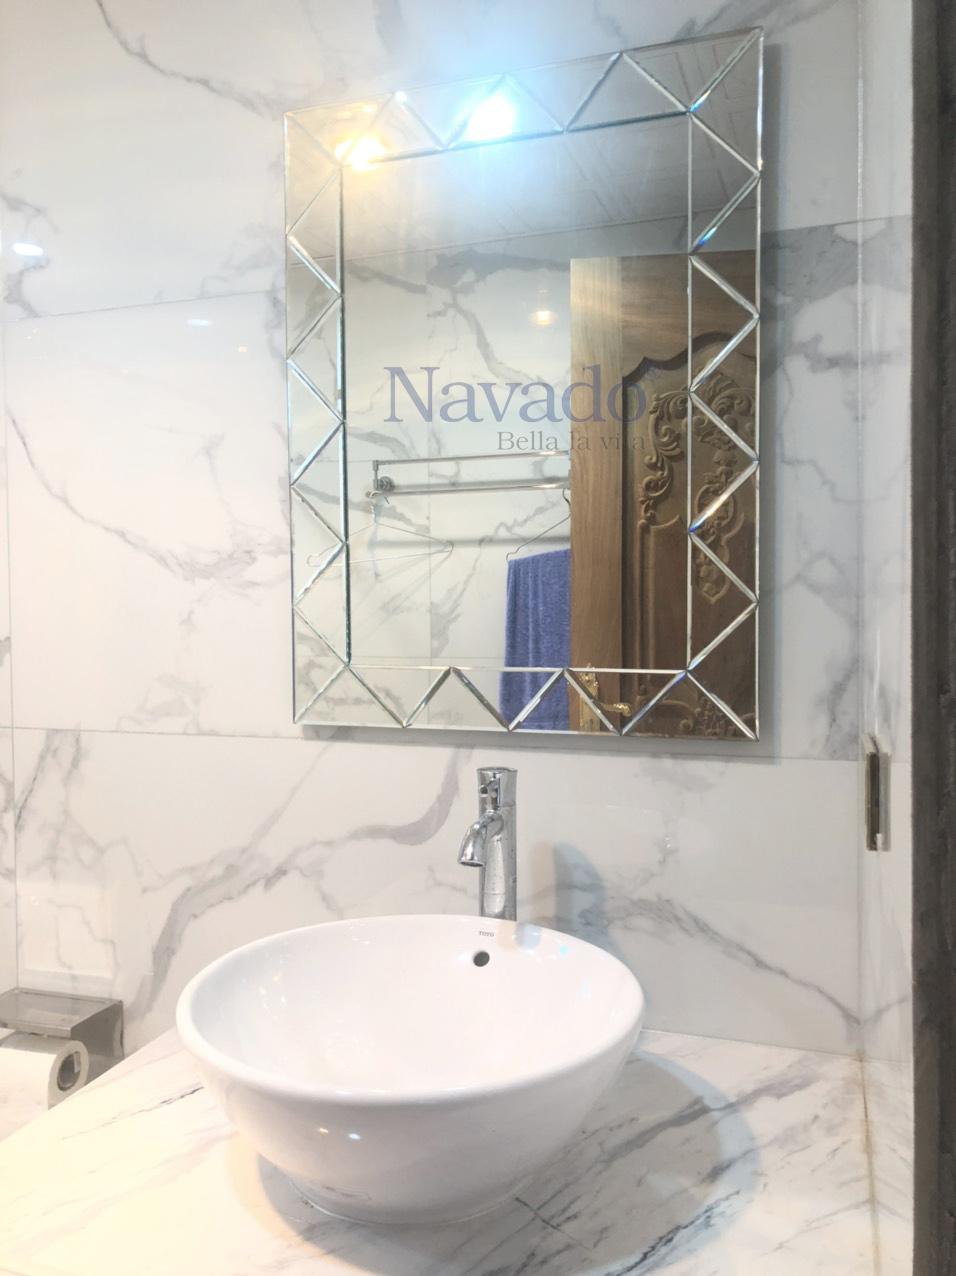 Gương treo tường phòng tắm Navado sẽ là lựa chọn hoàn hảo cho không gian tắm nhỏ bé của bạn. Với chân đế xoay linh hoạt, bạn có thể dễ dàng điều chỉnh góc quan sát phù hợp nhất. Với chất liệu kính cường lực cao cấp, sản phẩm đảm bảo an toàn tuyệt đối cho người sử dụng. Hãy sở hữu ngay gương treo tường phòng tắm Navado để trang trí cho không gian tắm của mình thêm tiện nghi và thông thoáng.